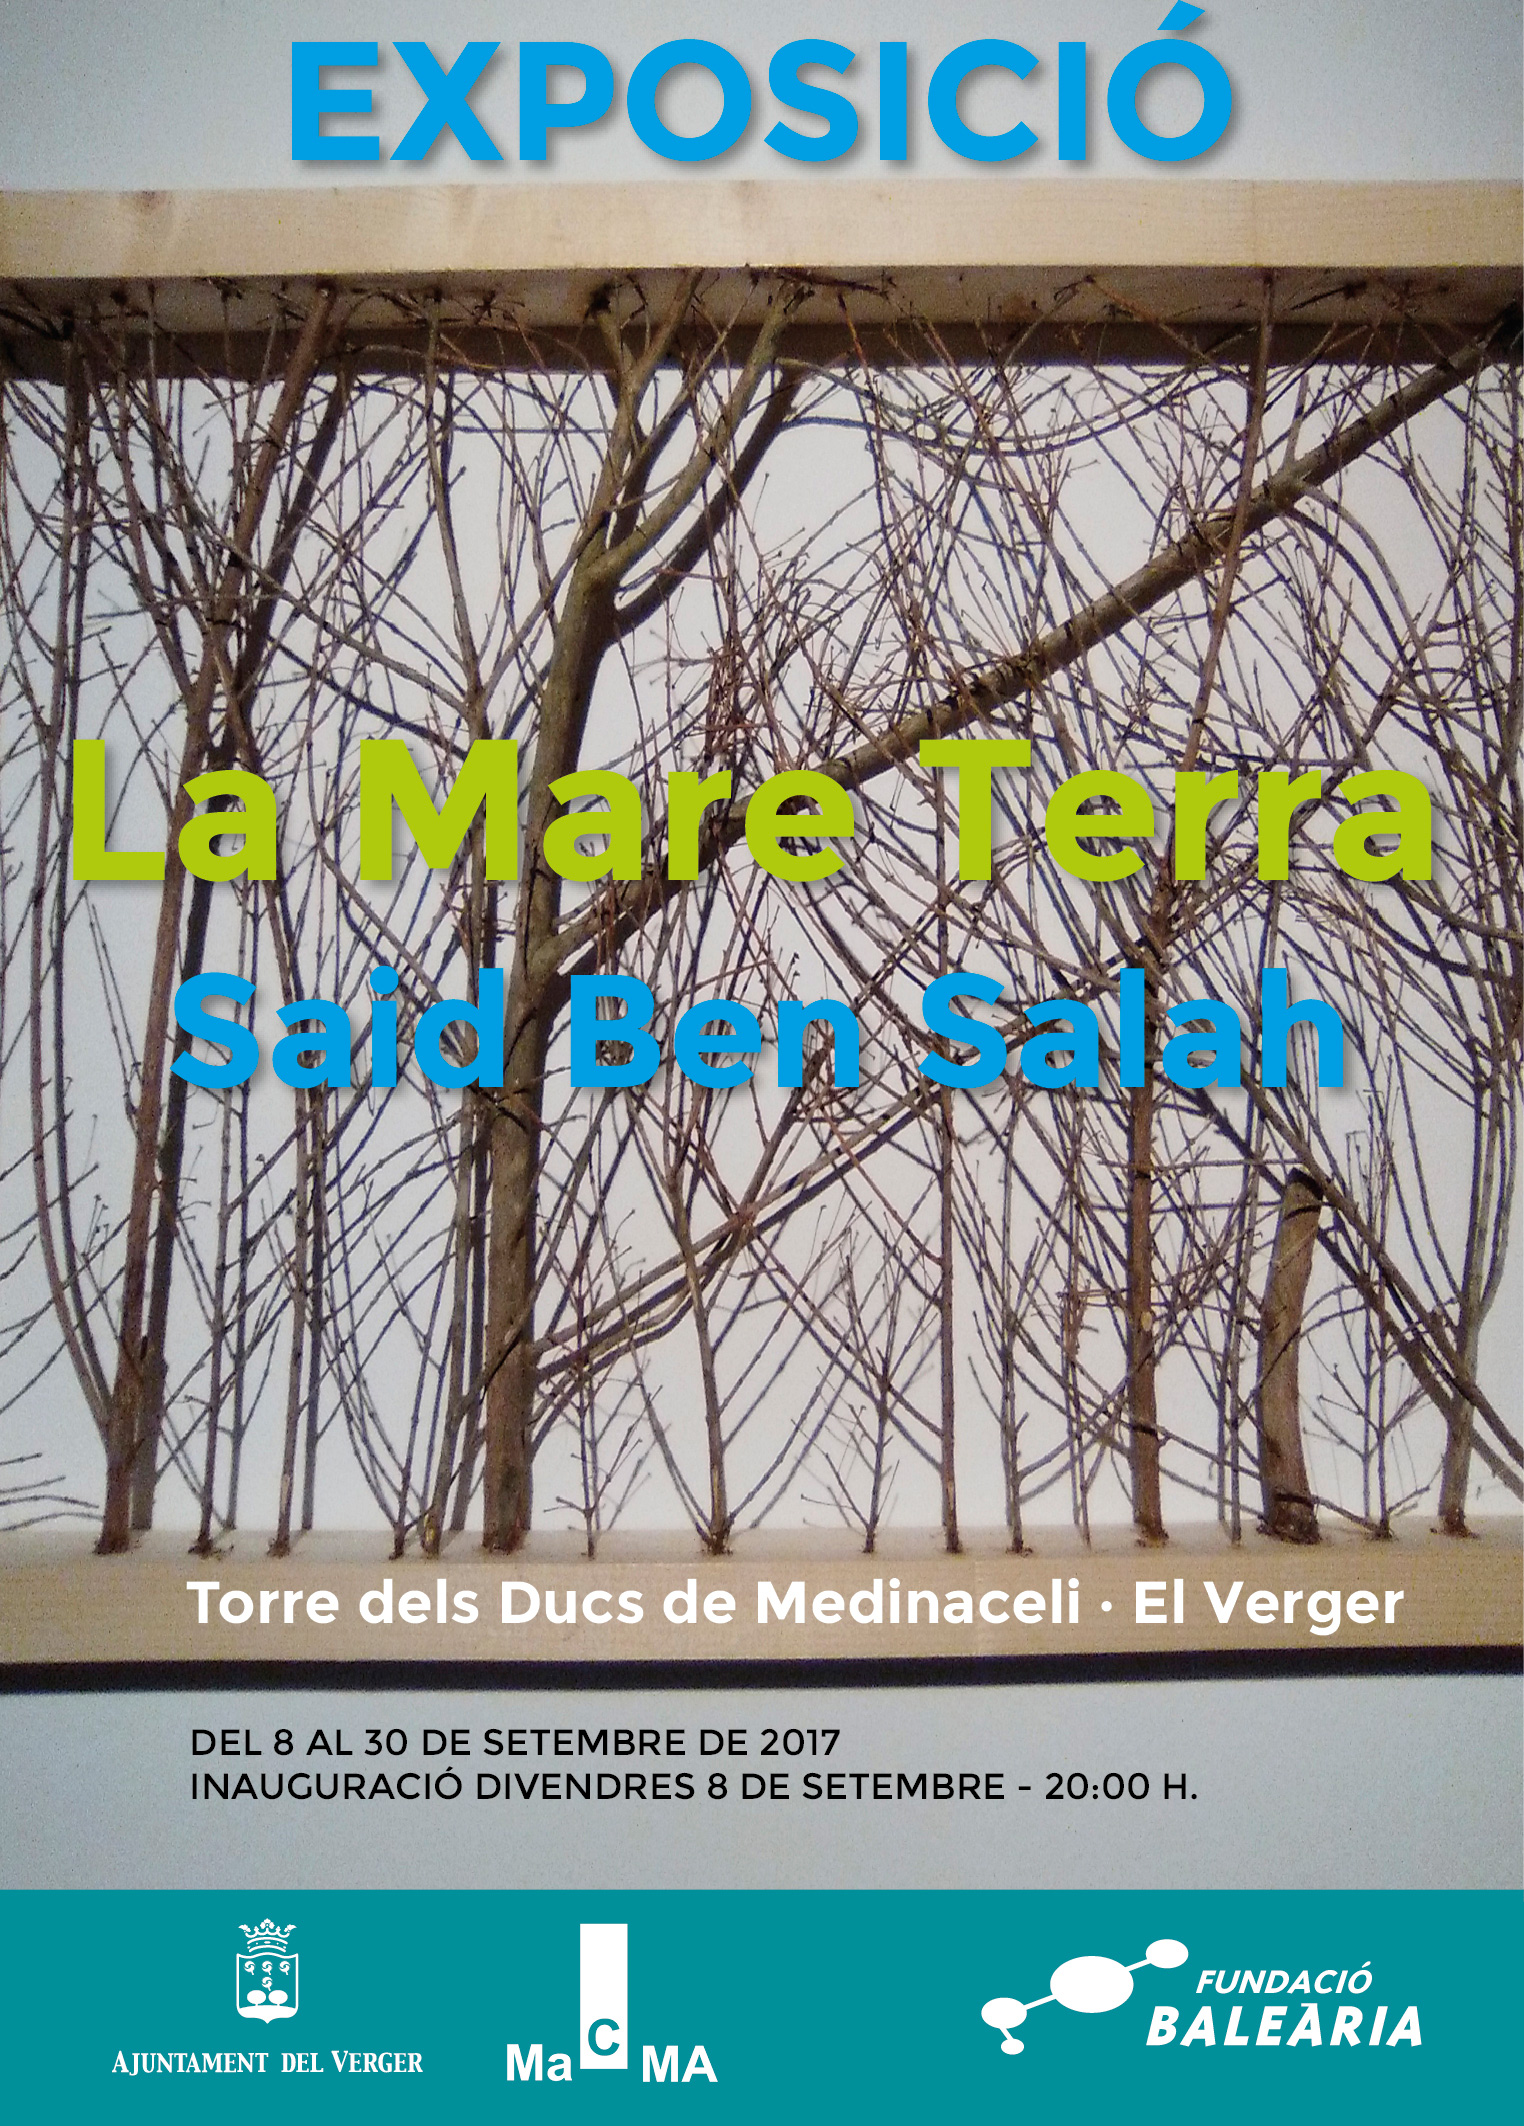 La Fundació Baleària presenta la exposición “La mare terra” de Said Ben Sal·lah en El Verger